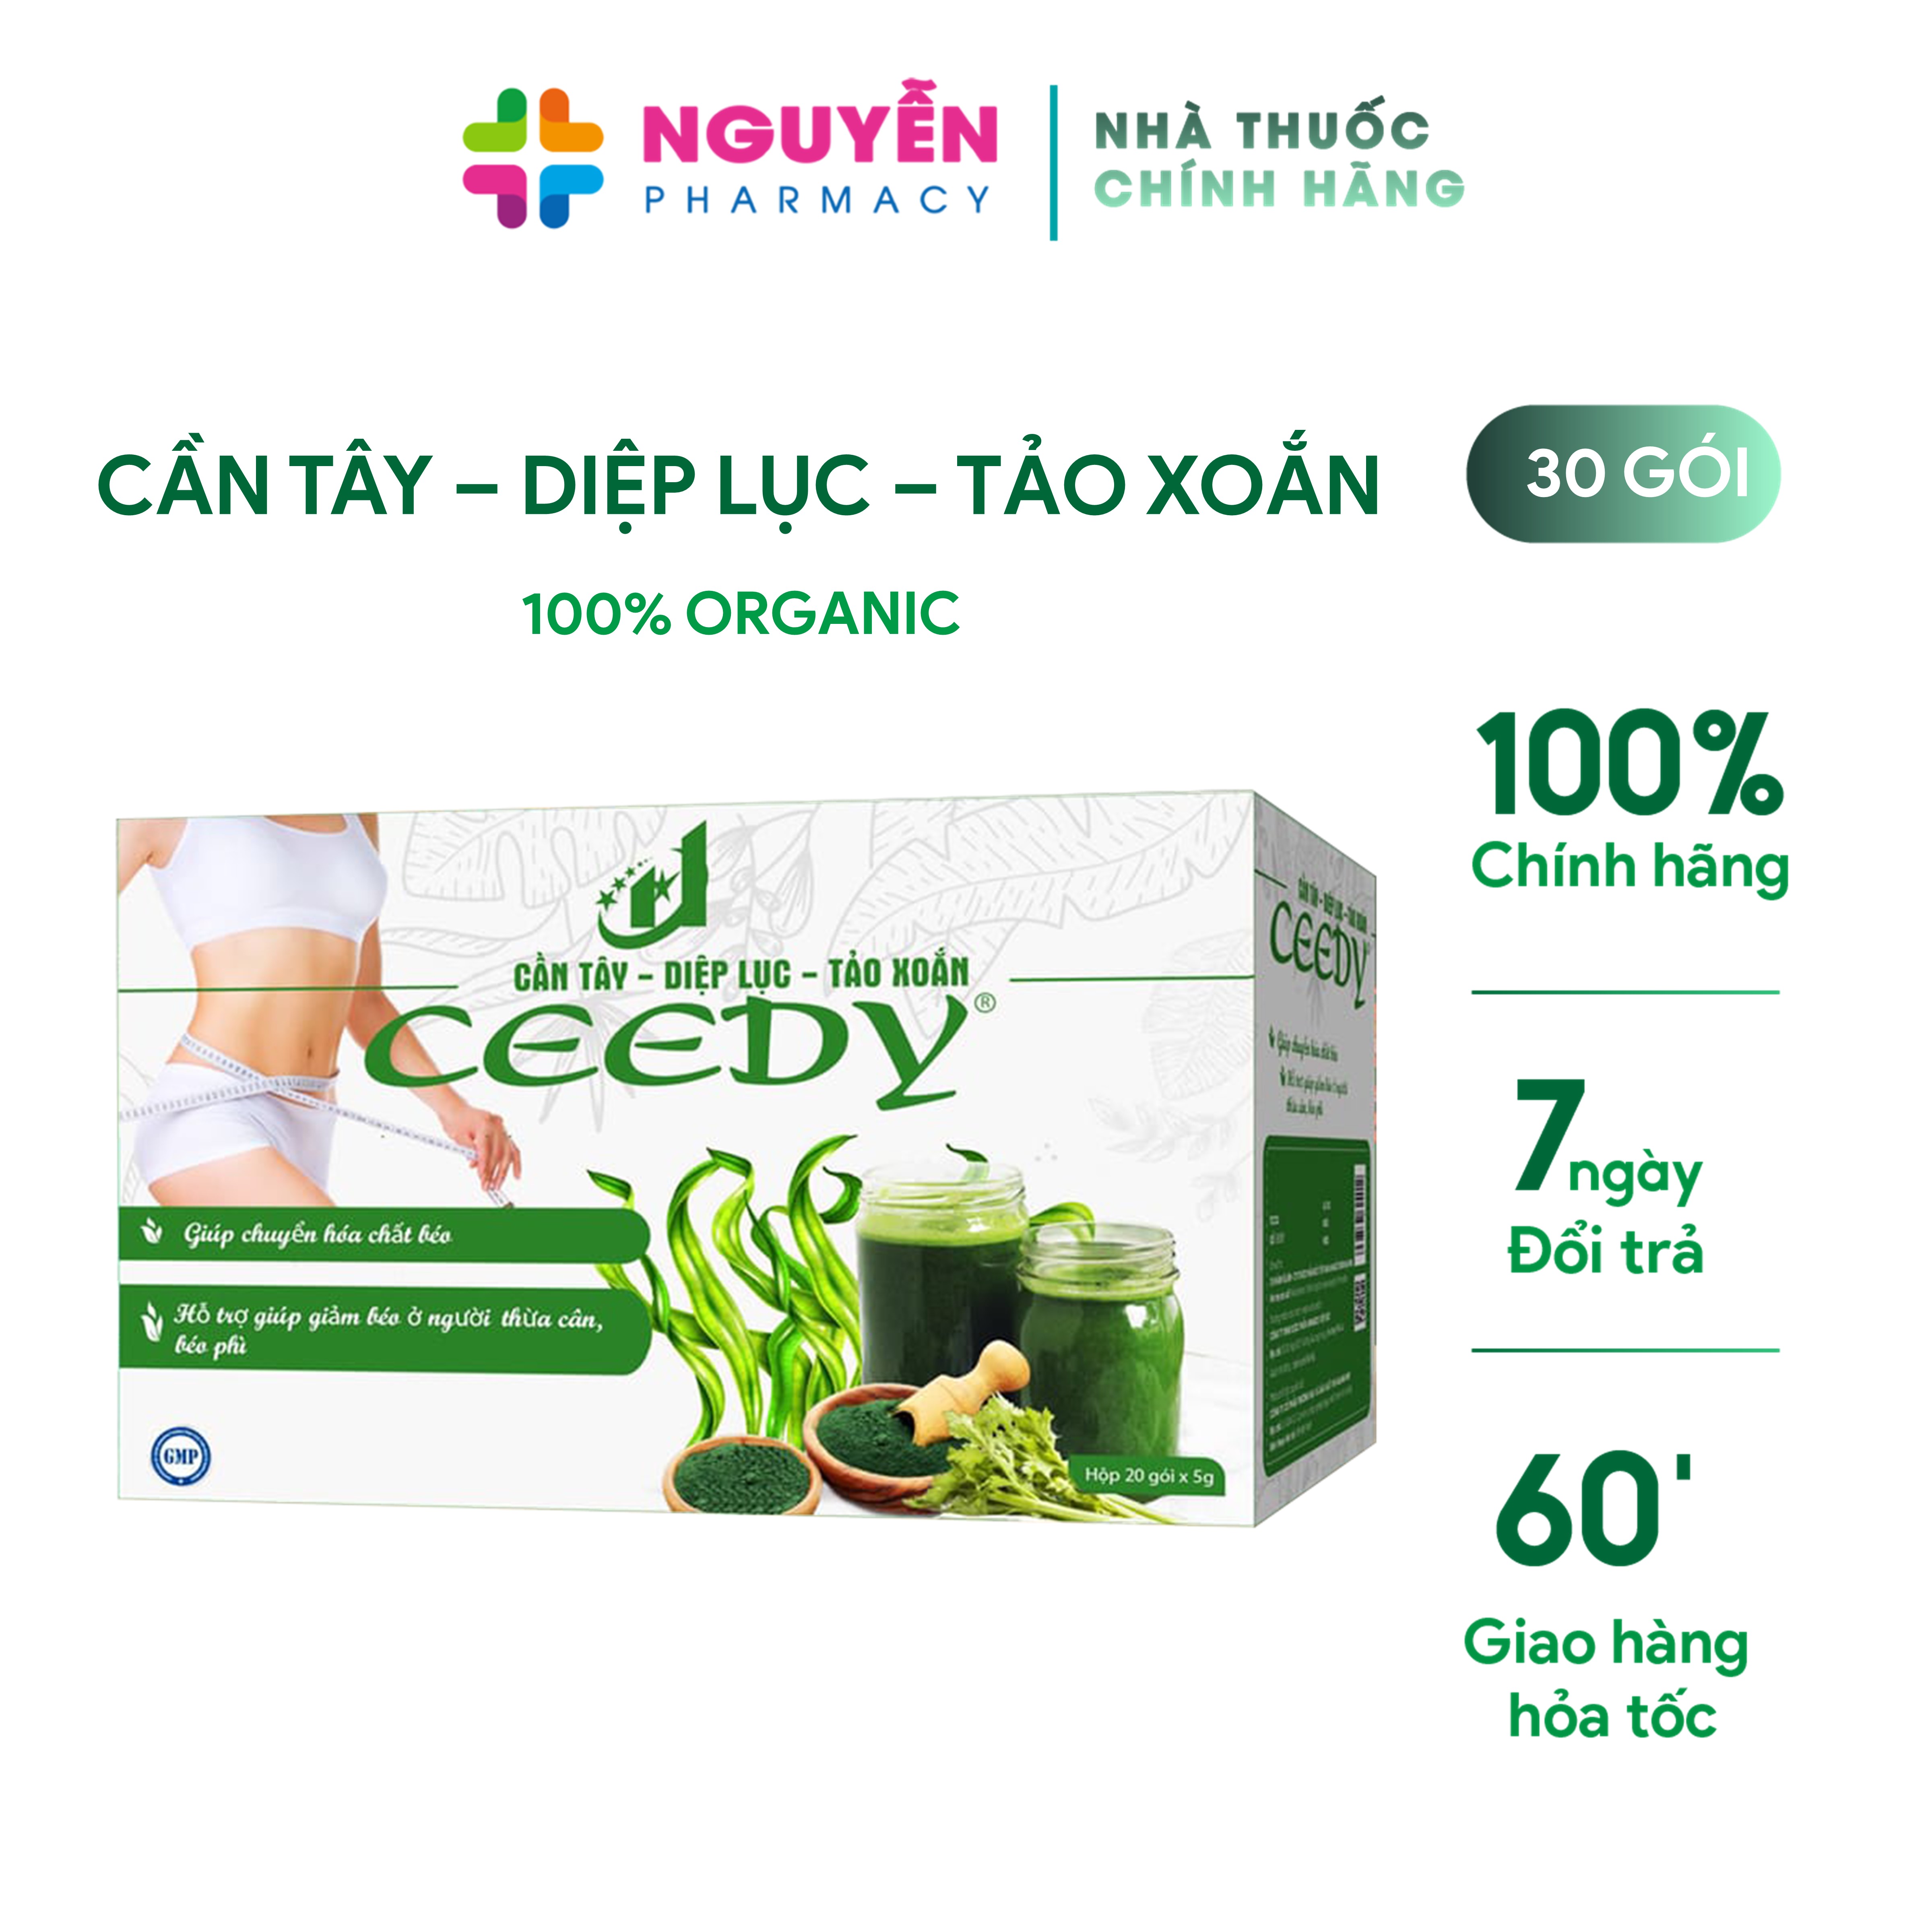 Trà giảm cân Ceedy - Trà organic công nghệ Hàn Quốc